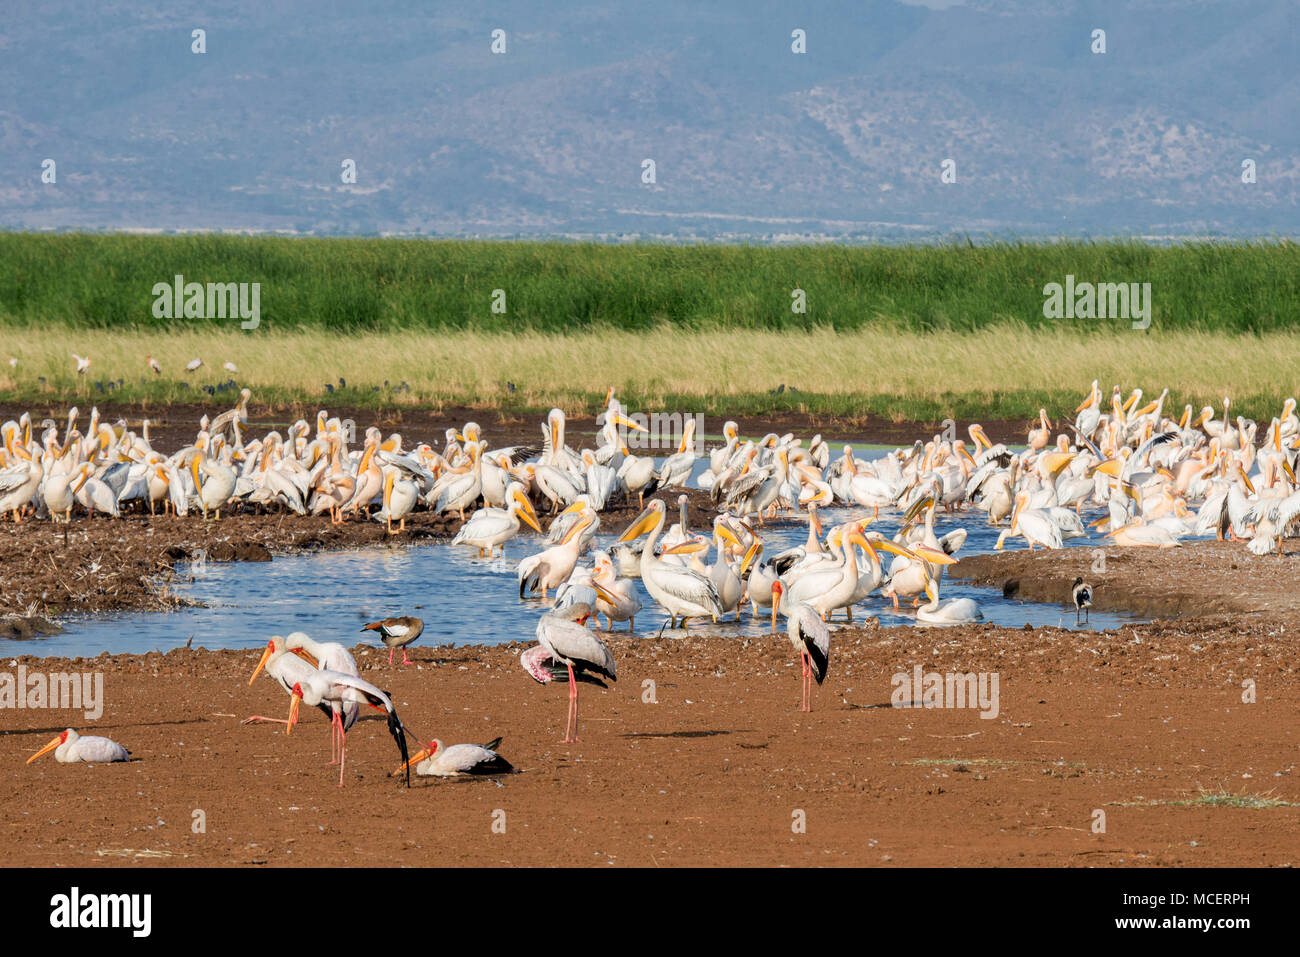 La cigüeña de pico amarillo( Mycteria ibis) y Great White pelícanos (Pelecanus onocrotalus) en el abrevadero, Parque Nacional Lago Manyara, Tanzania Foto de stock